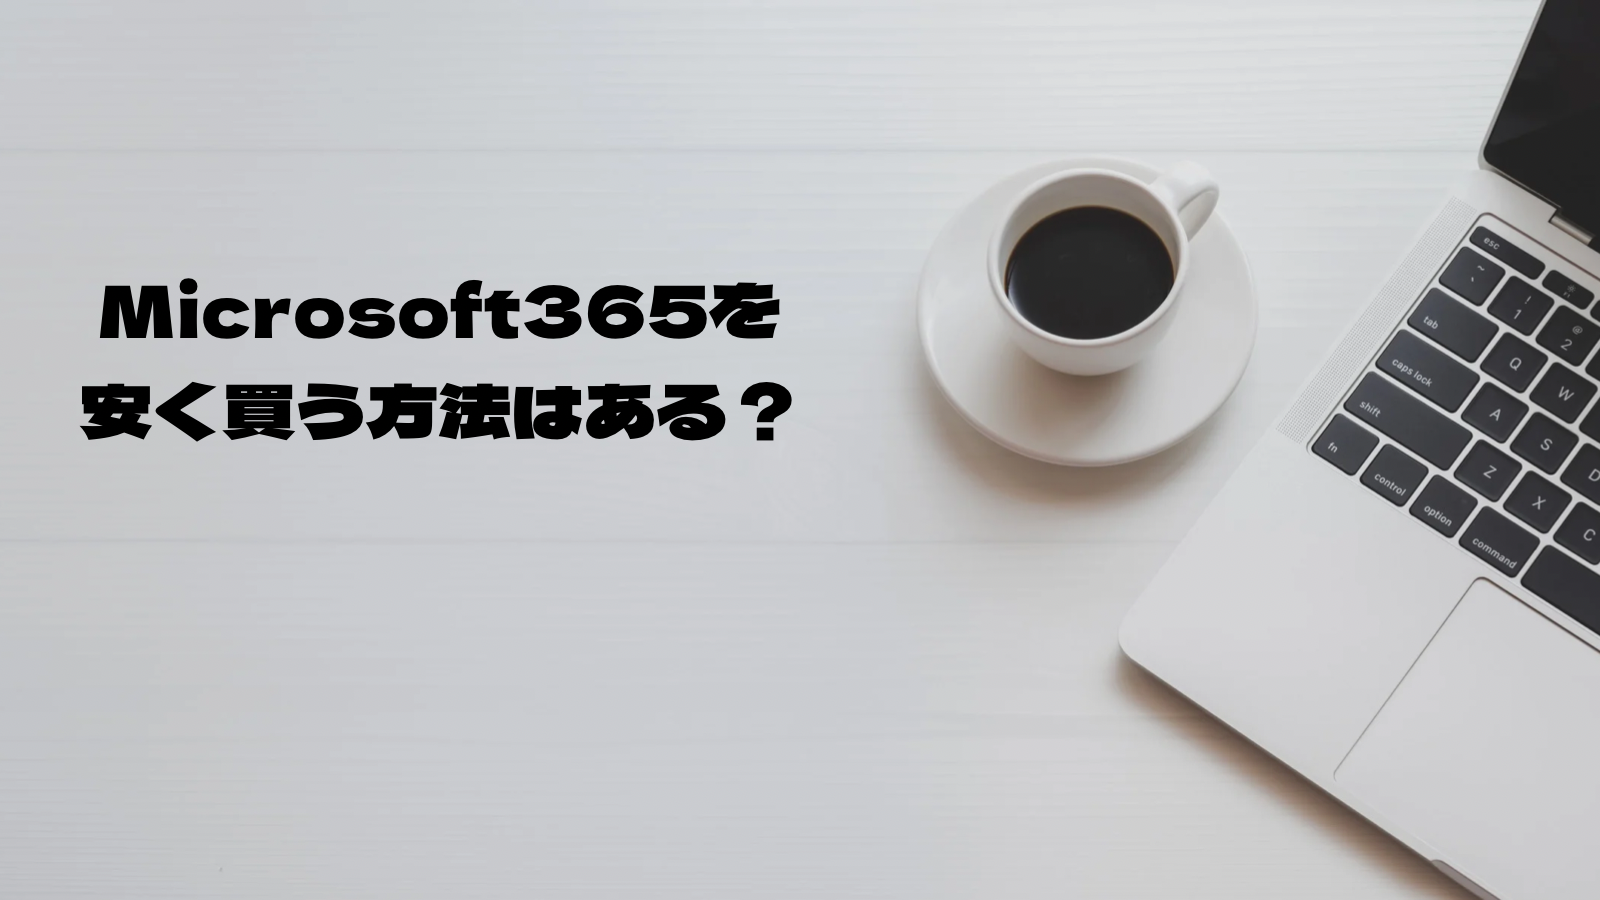 Microsoft365を安く買う方法はあるの？1つのアカウントで何台まで使えるのか、personalやbusinessはどれを選べばいいのかを解説します